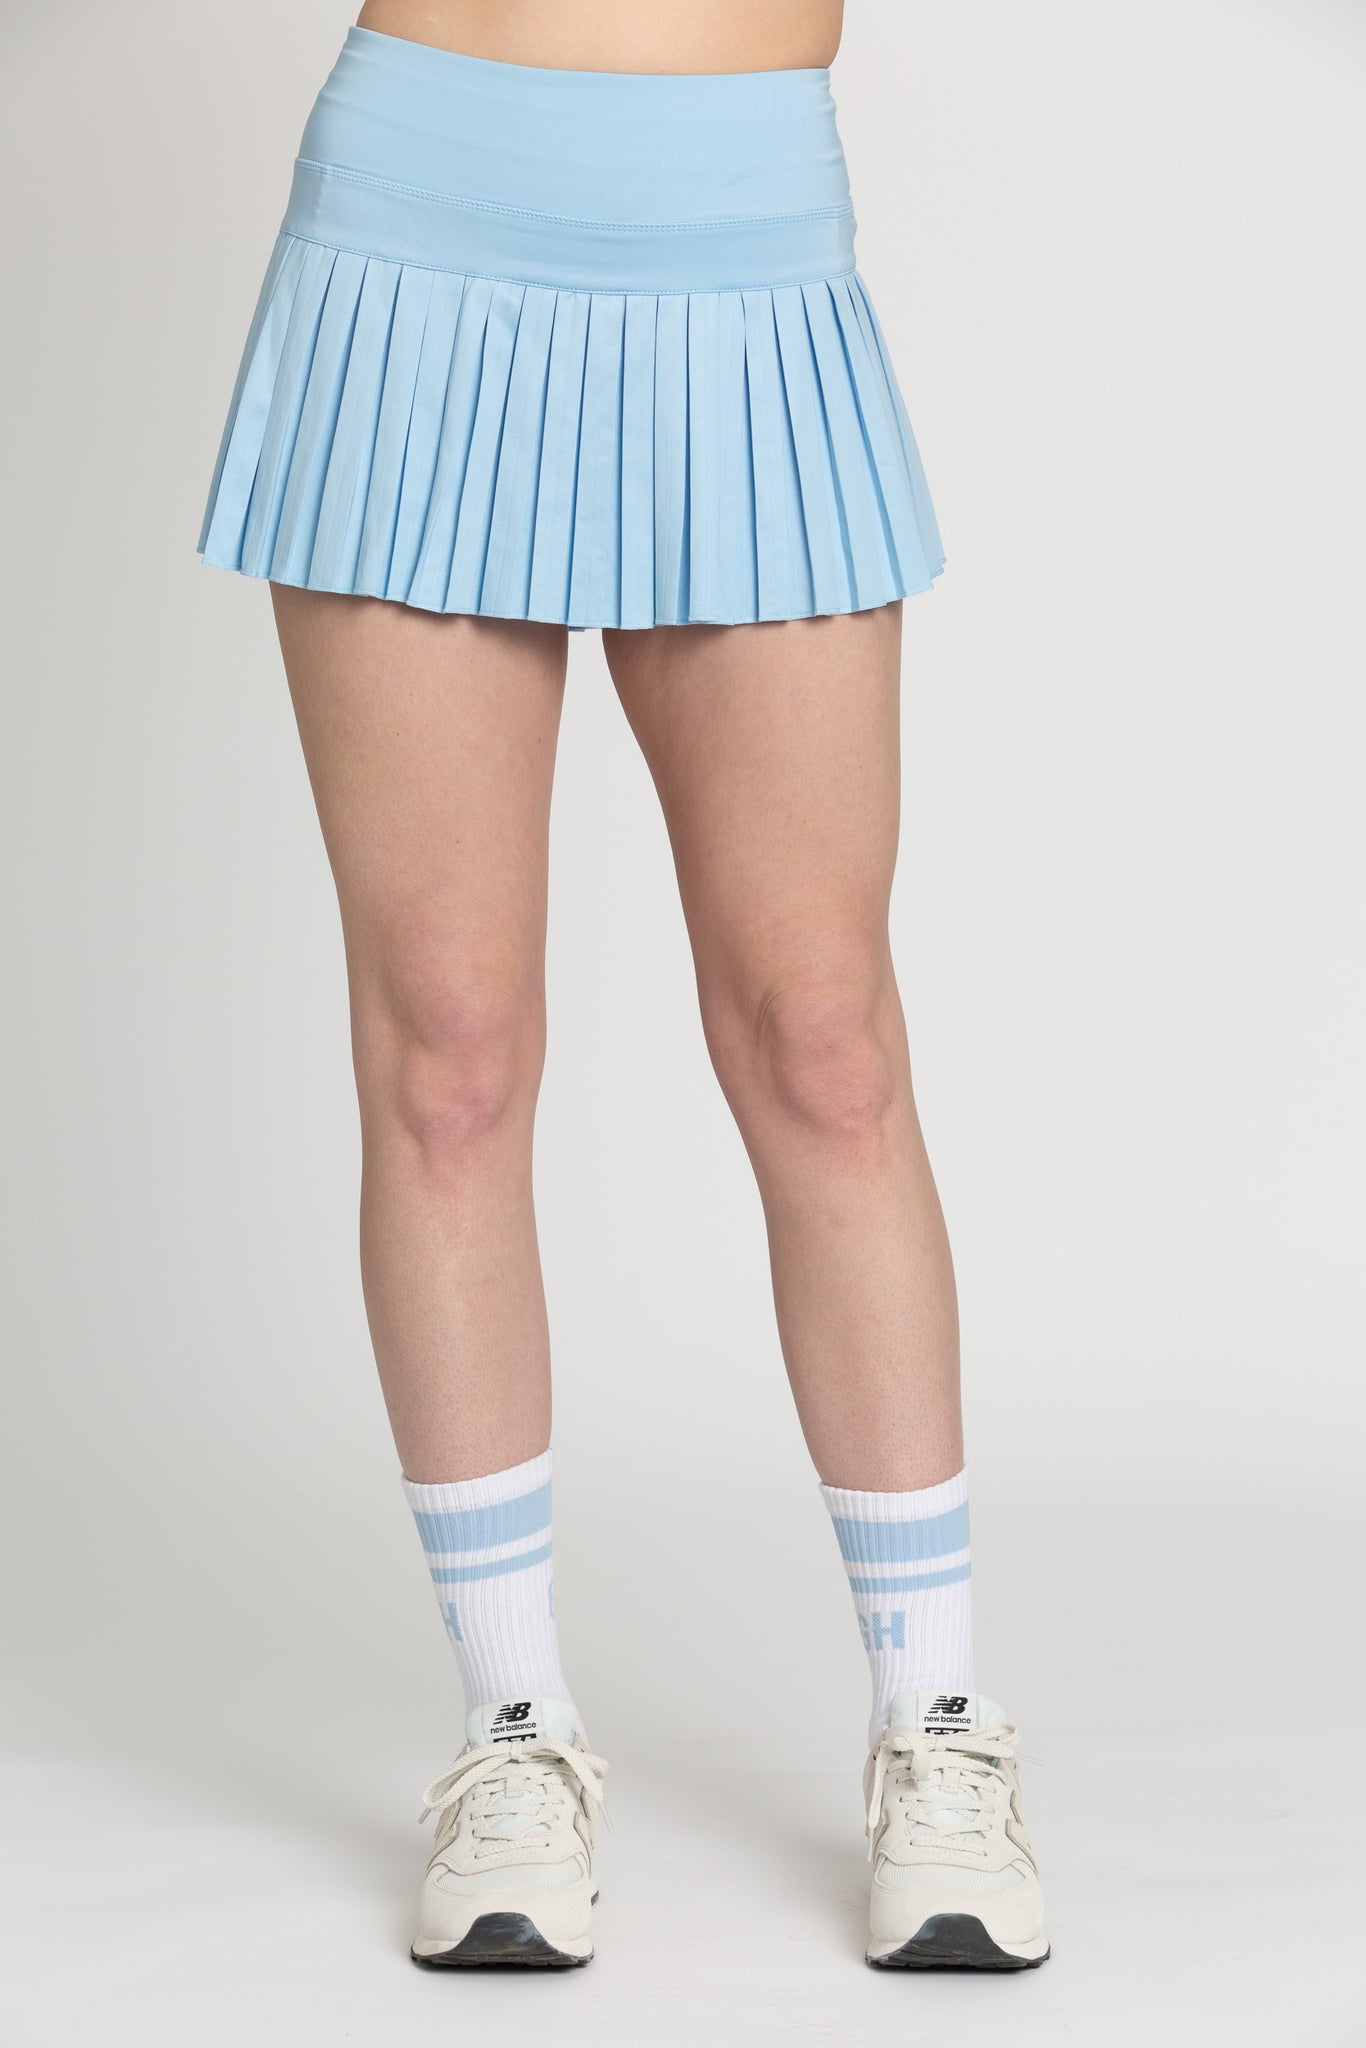 Aqua Sky Pleated Tennis Skirt